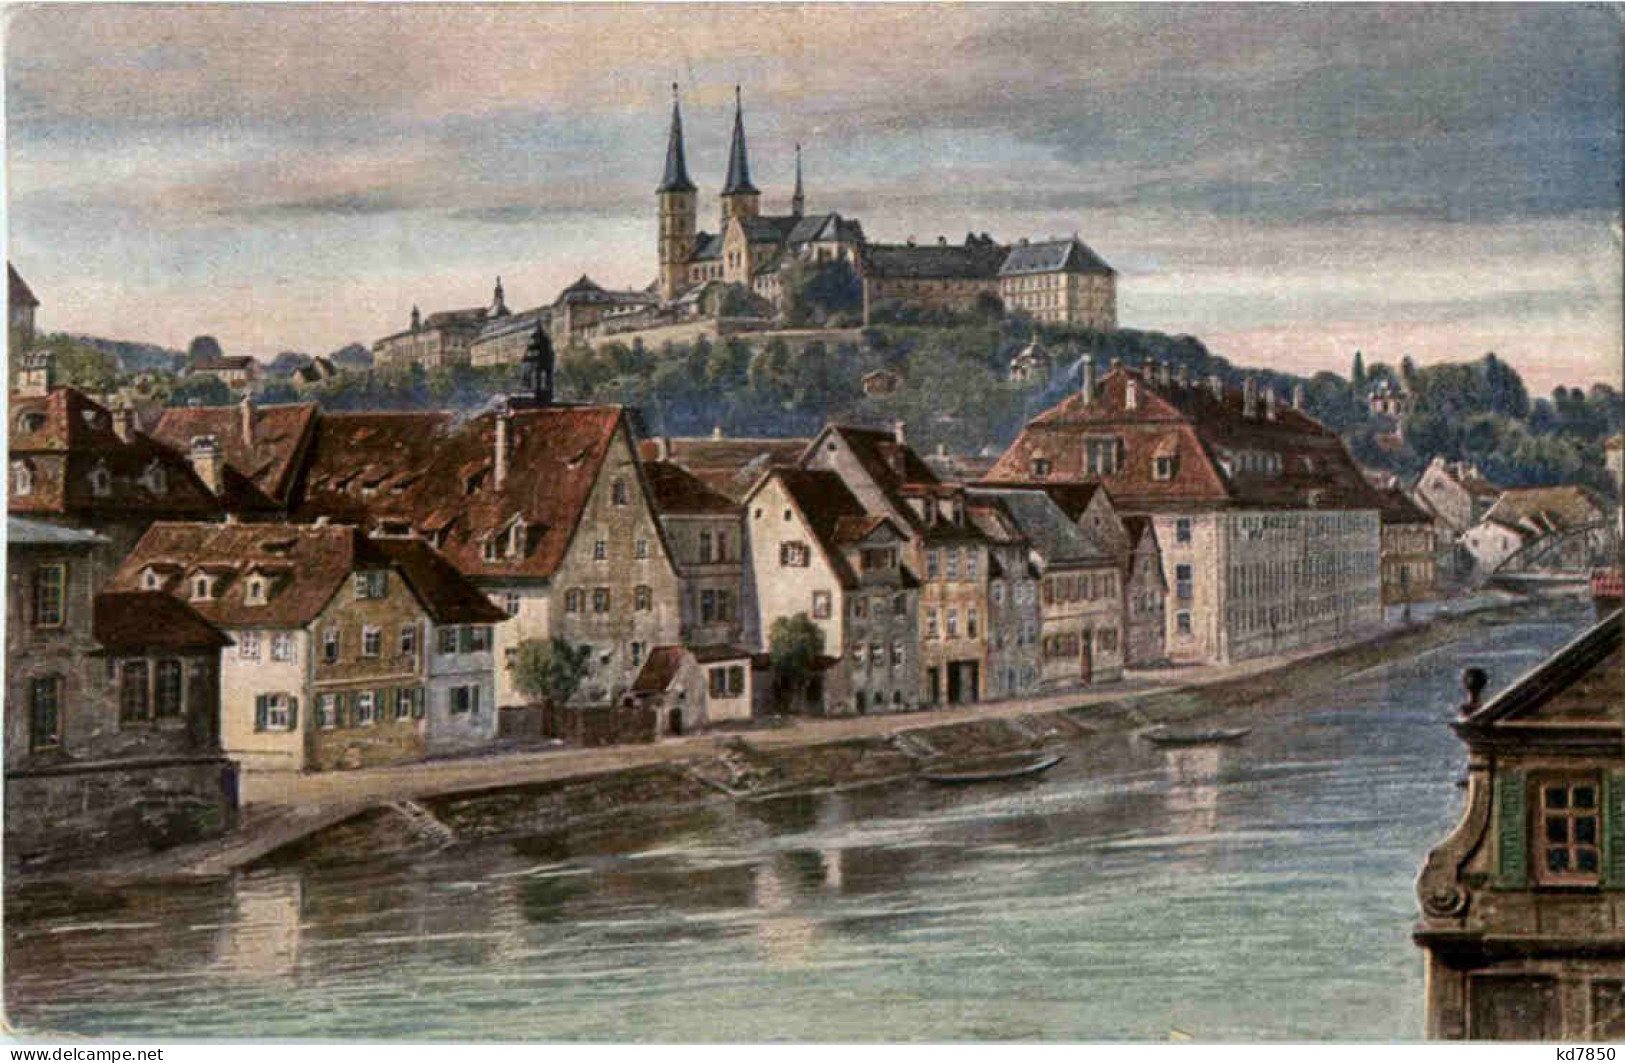 Bamberg - Bamberg